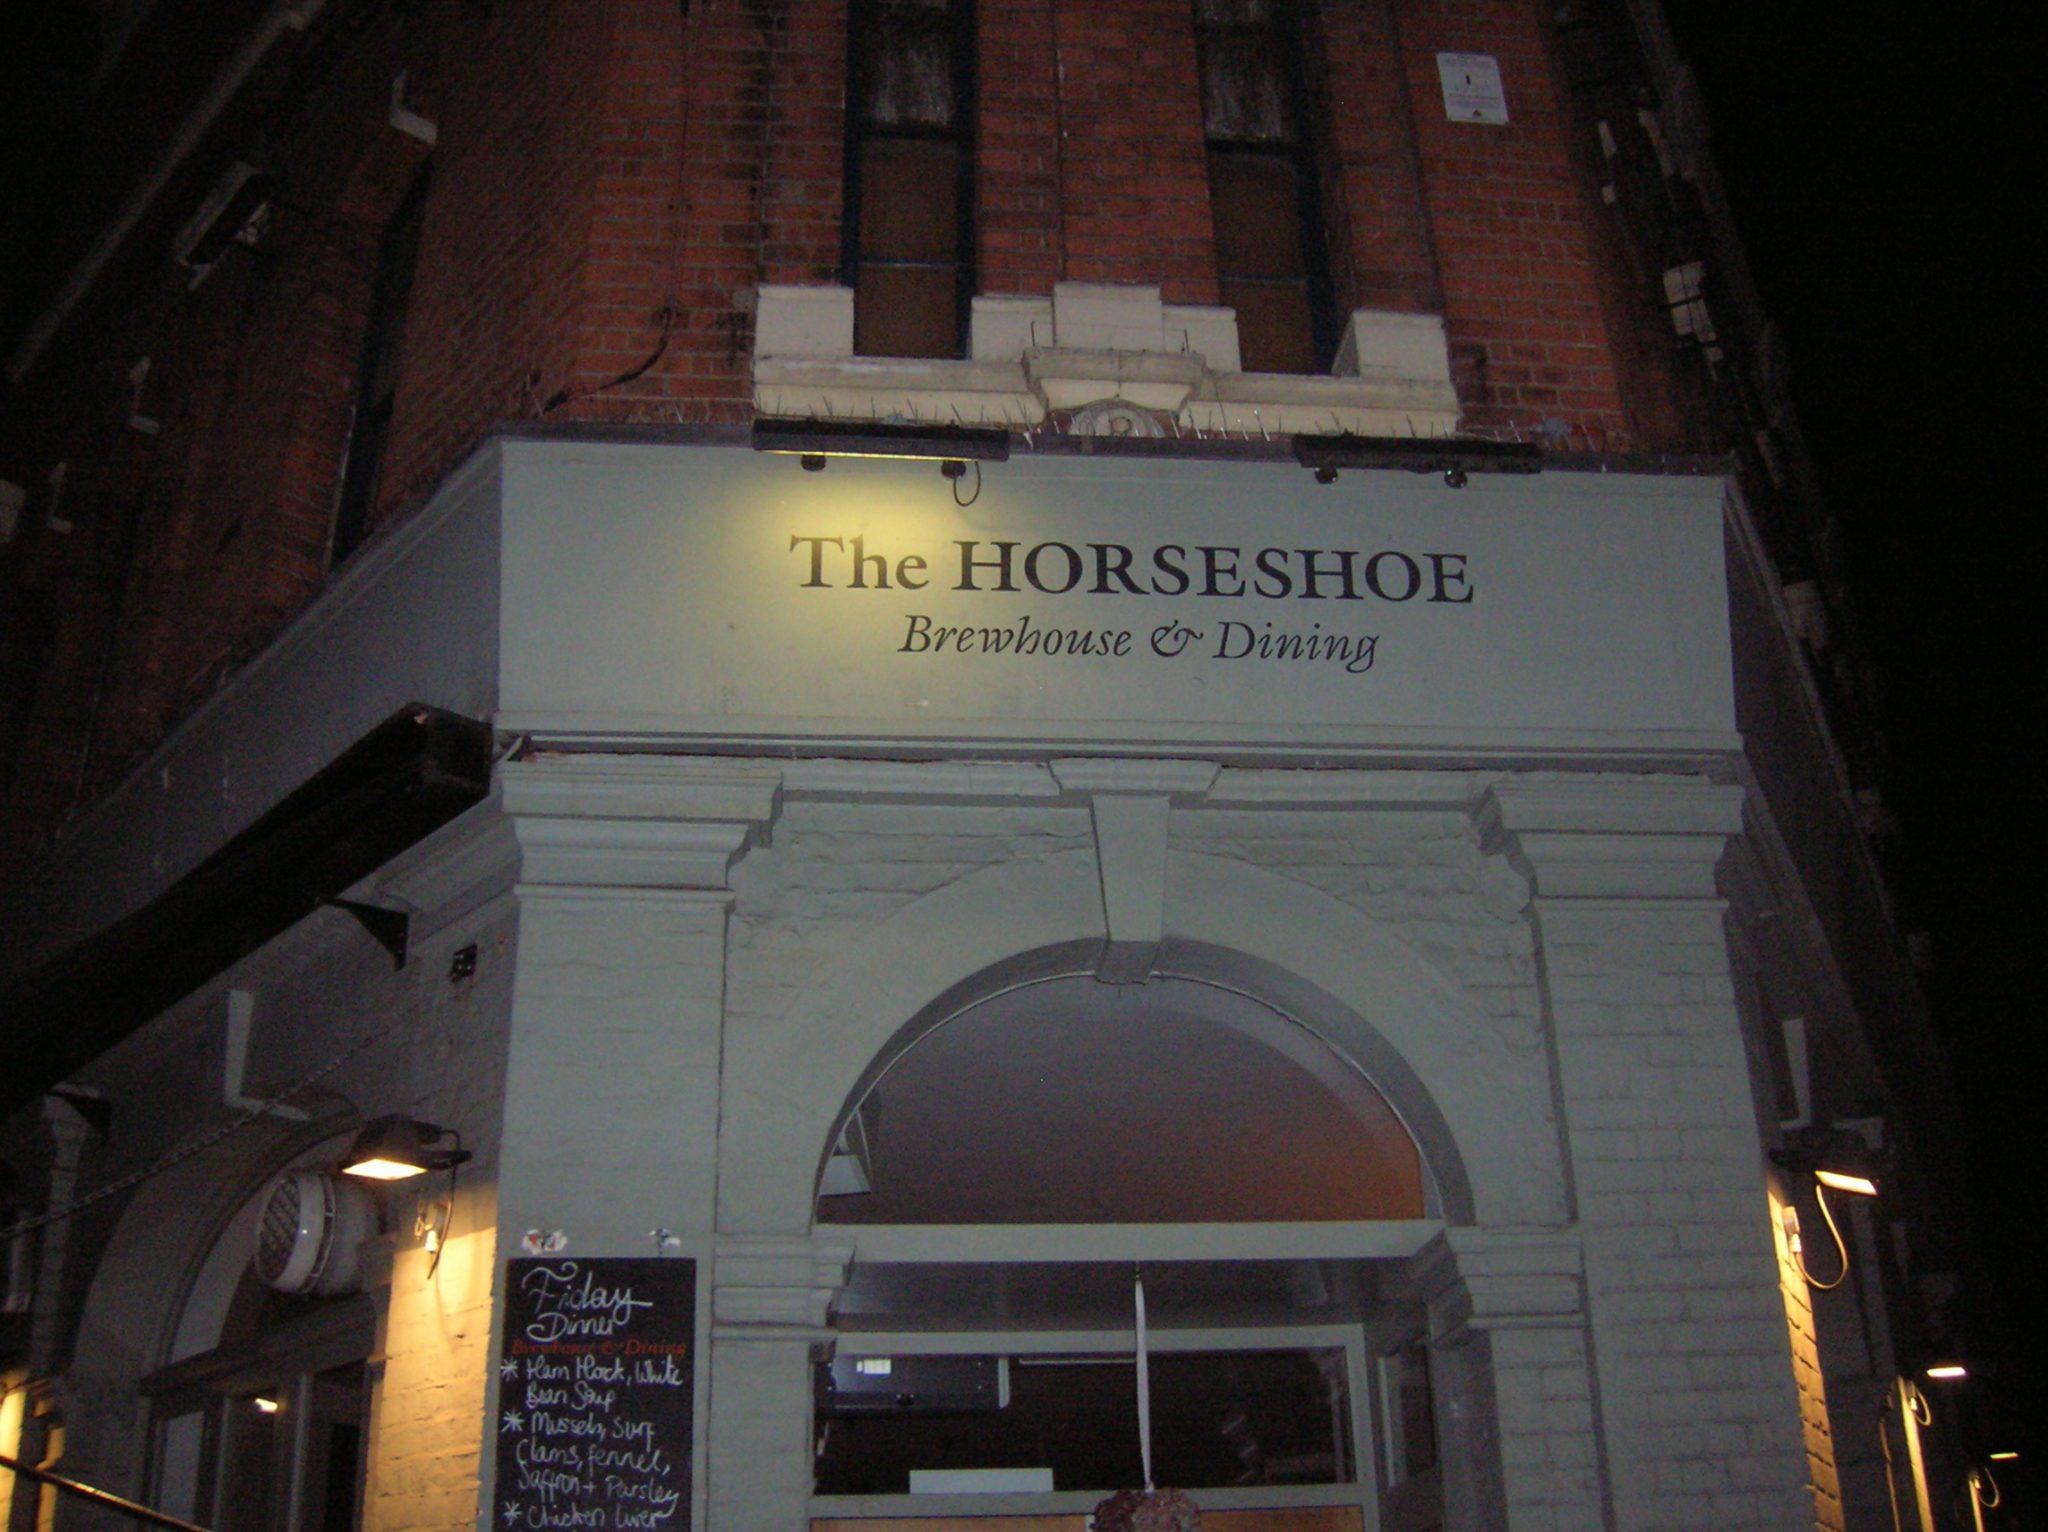 The HORSESHOE